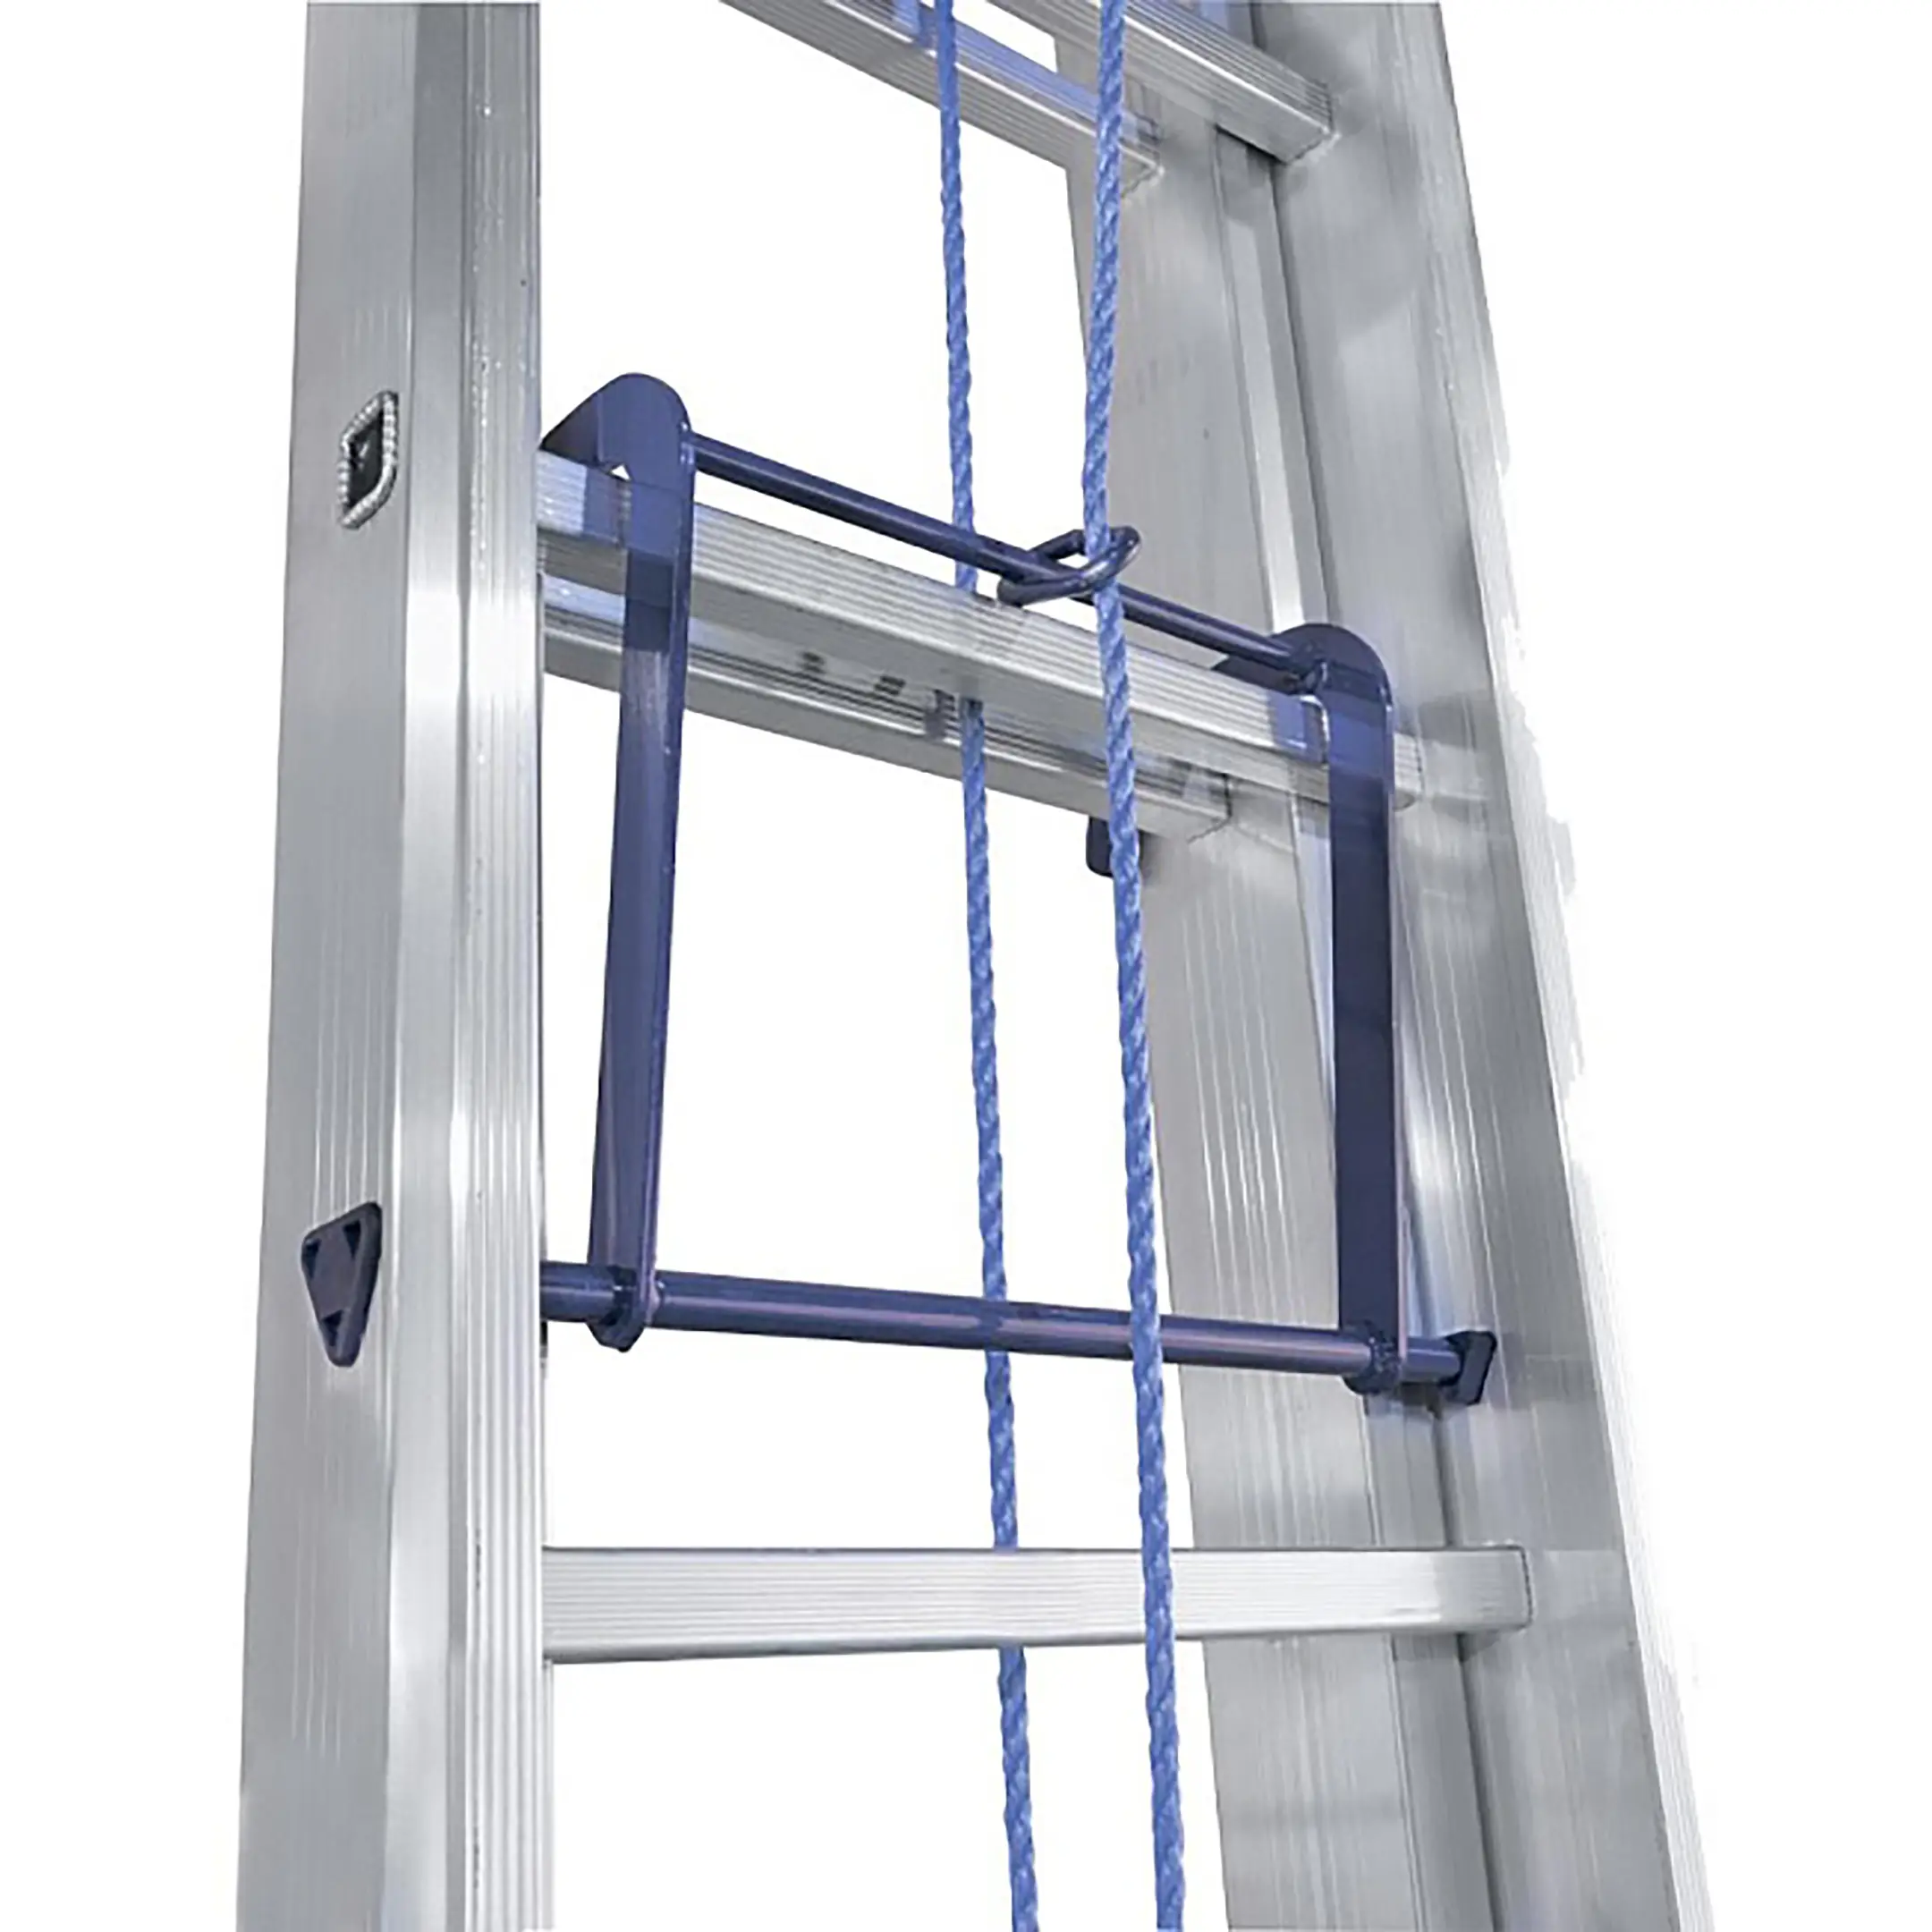 Лестница трехсекционная алюминиевая выдвижная с тросом Alumet 3х21 арт. 3321